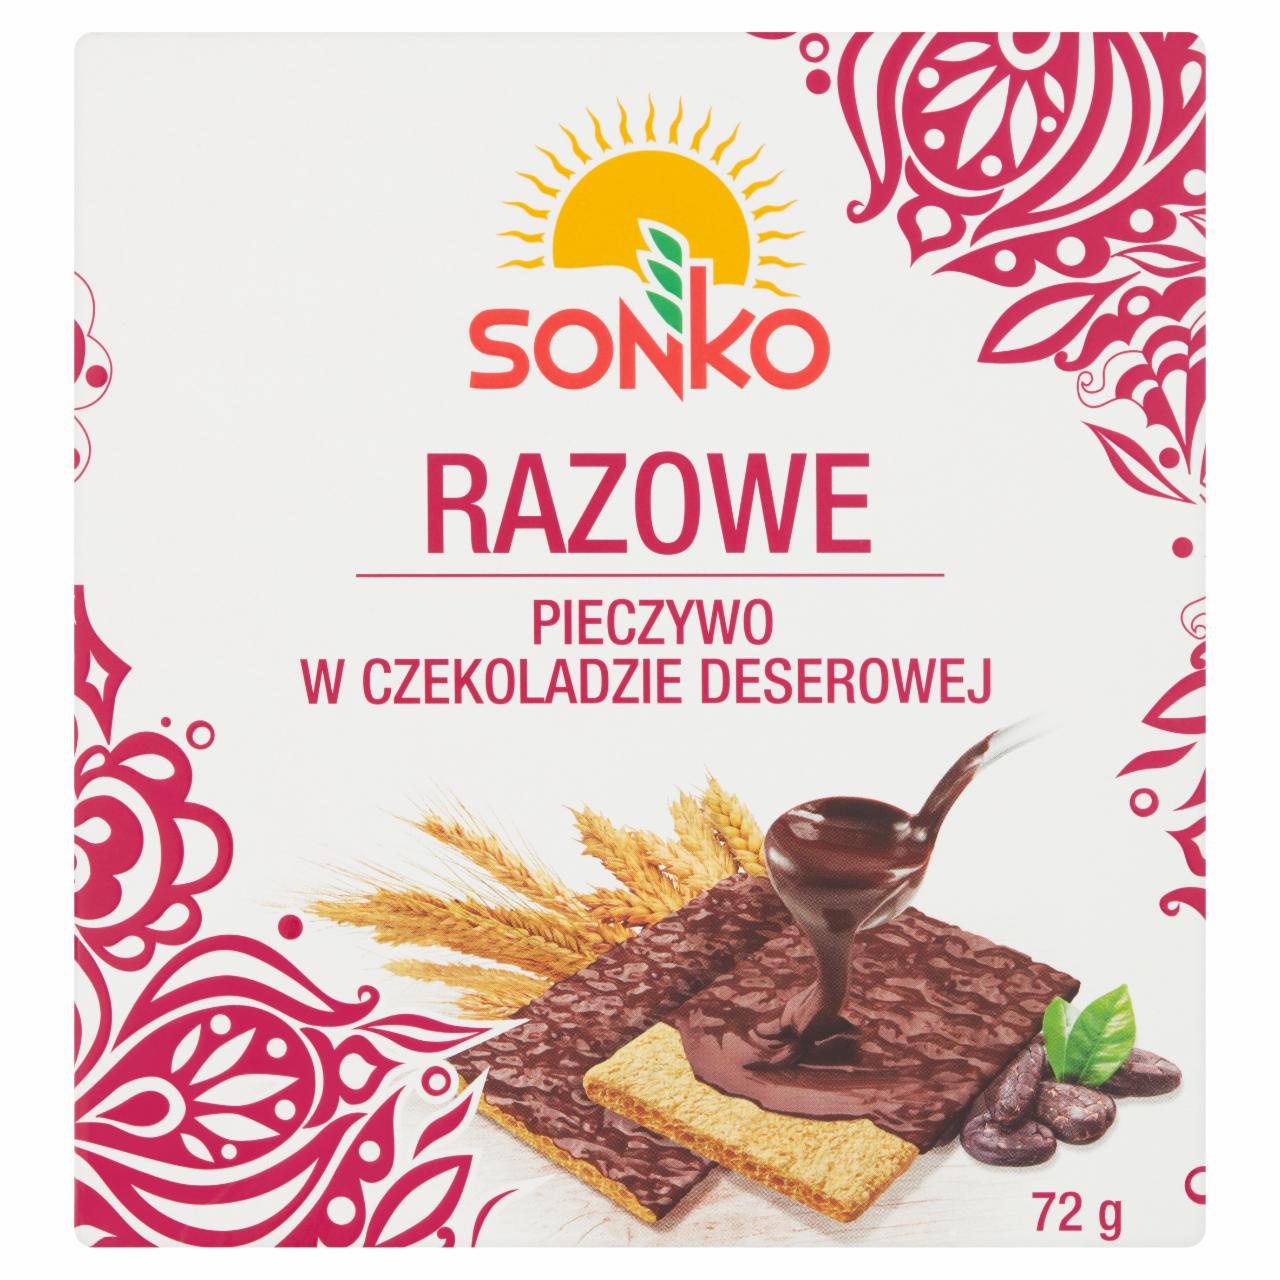 Zdjęcia - Sonko Pieczywo w czekoladzie deserowej razowe 72 g